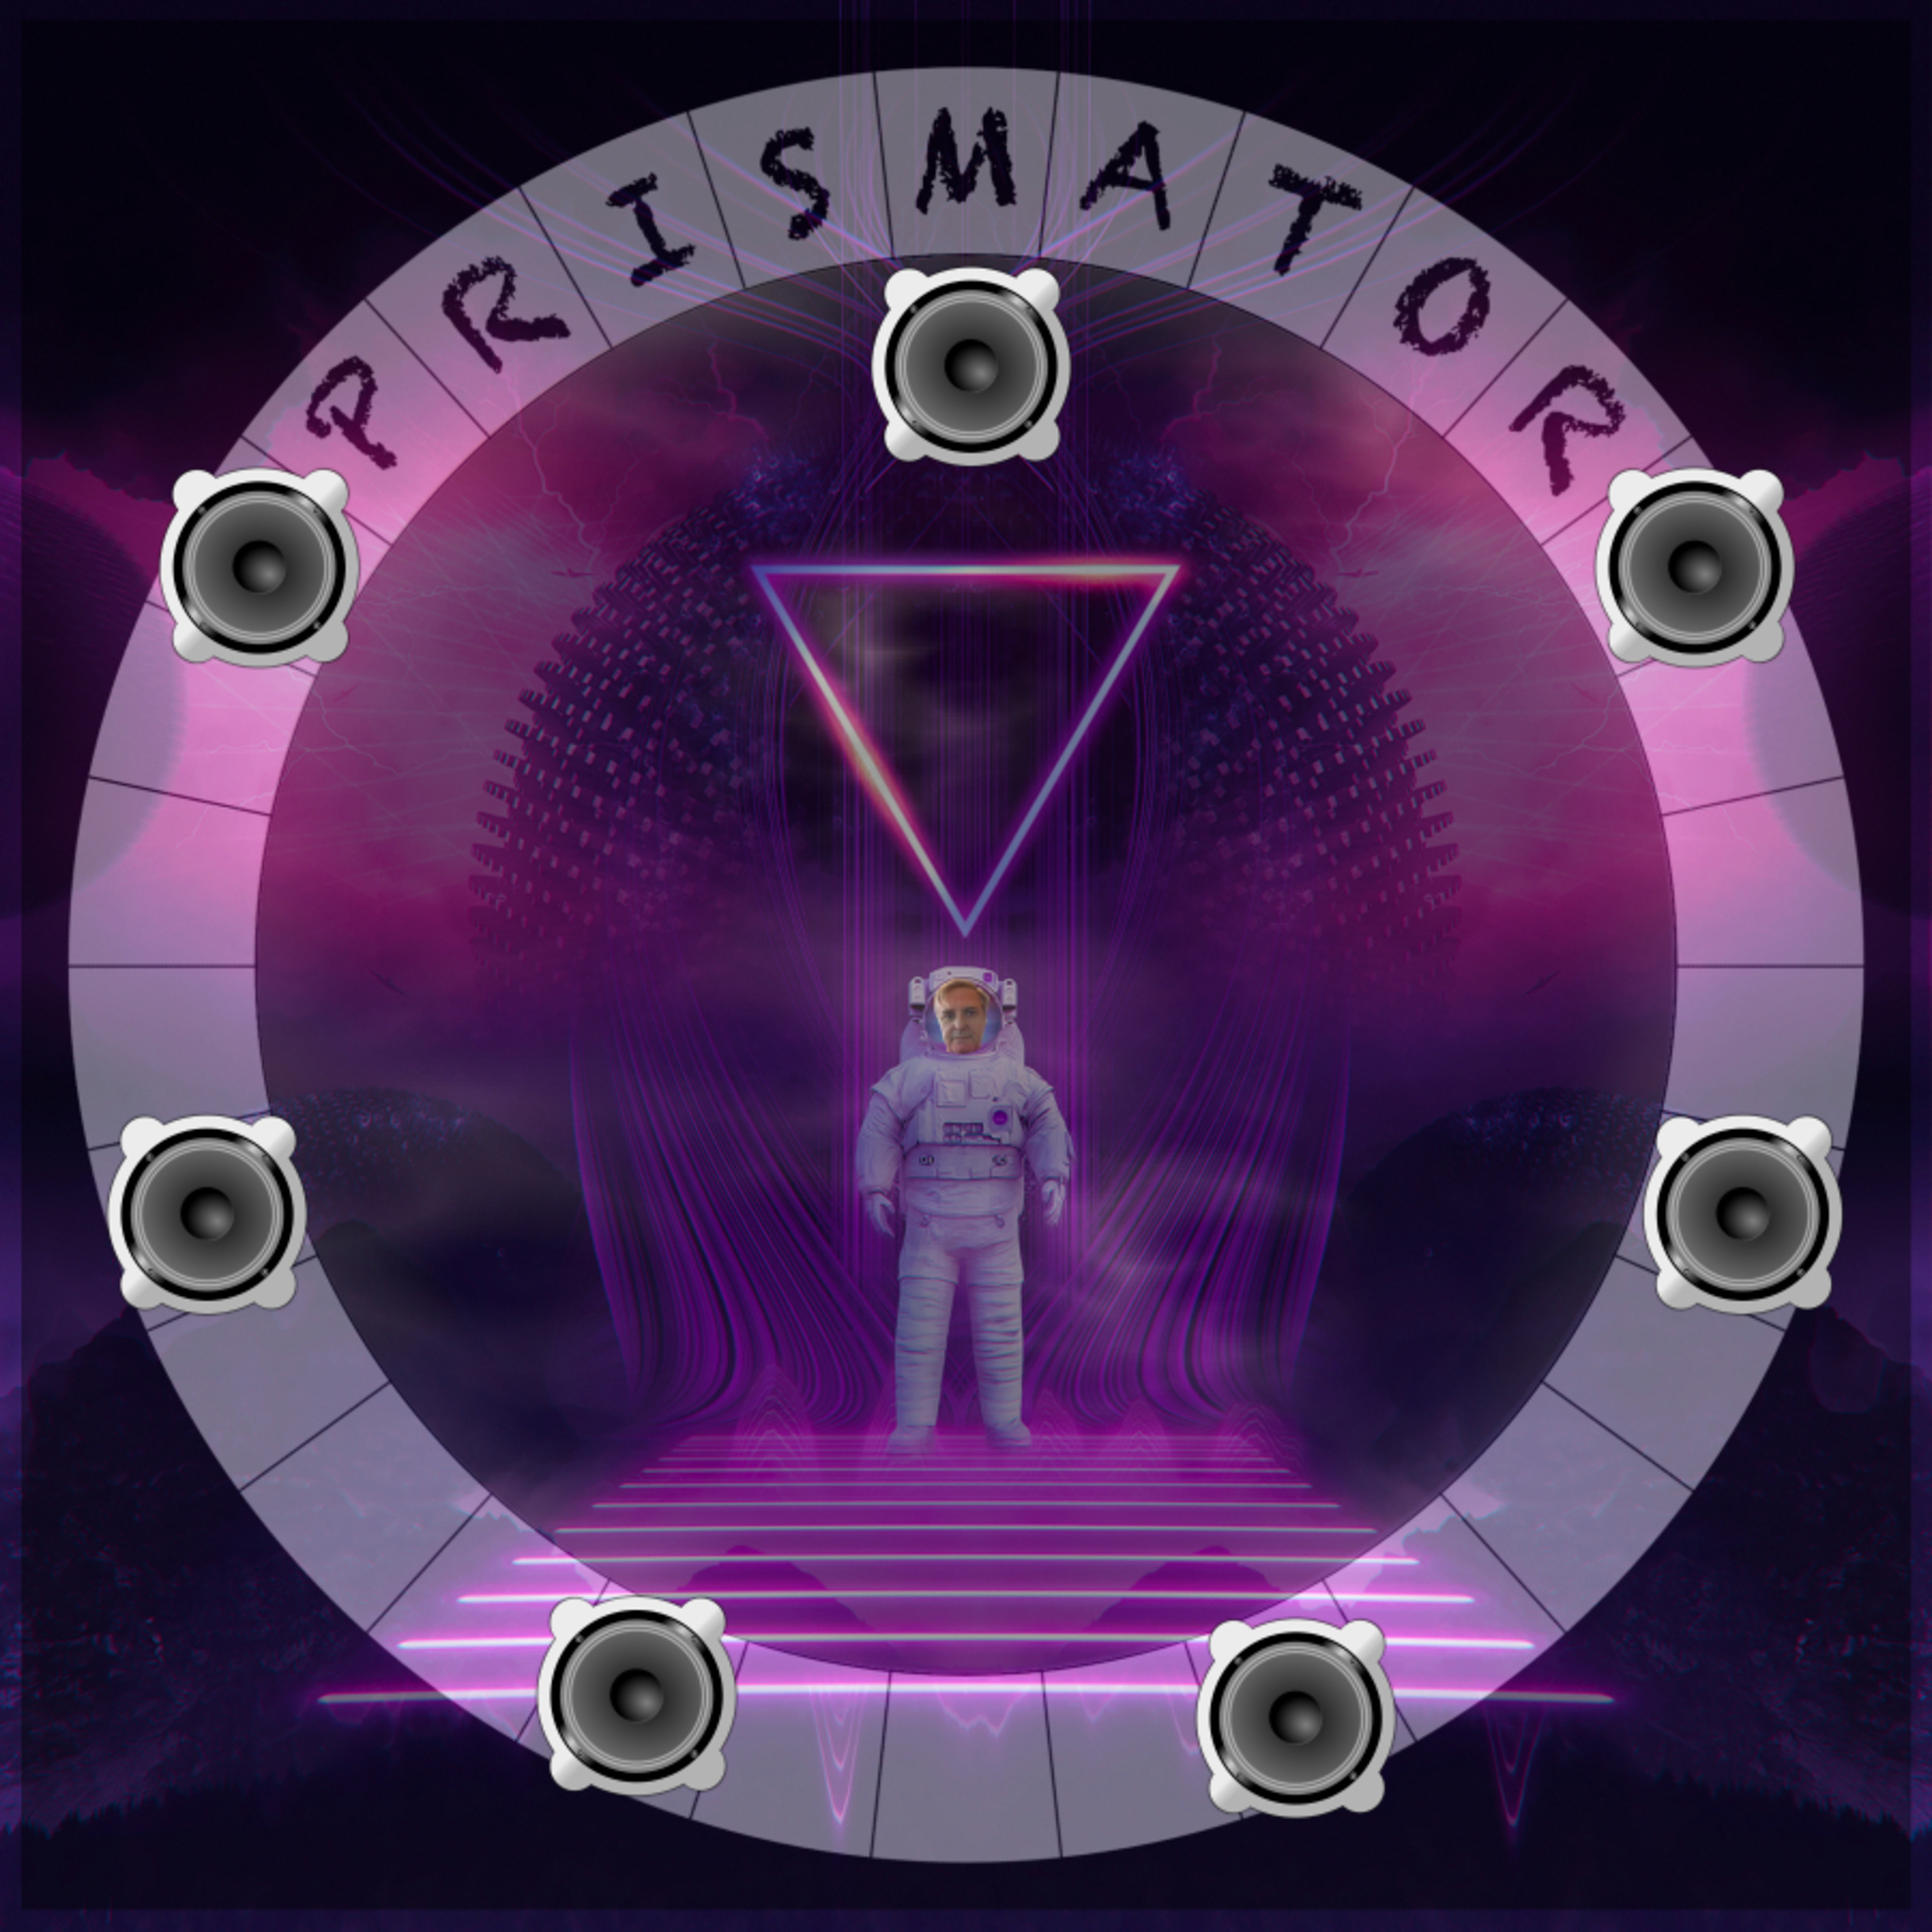 Prismator neues Label